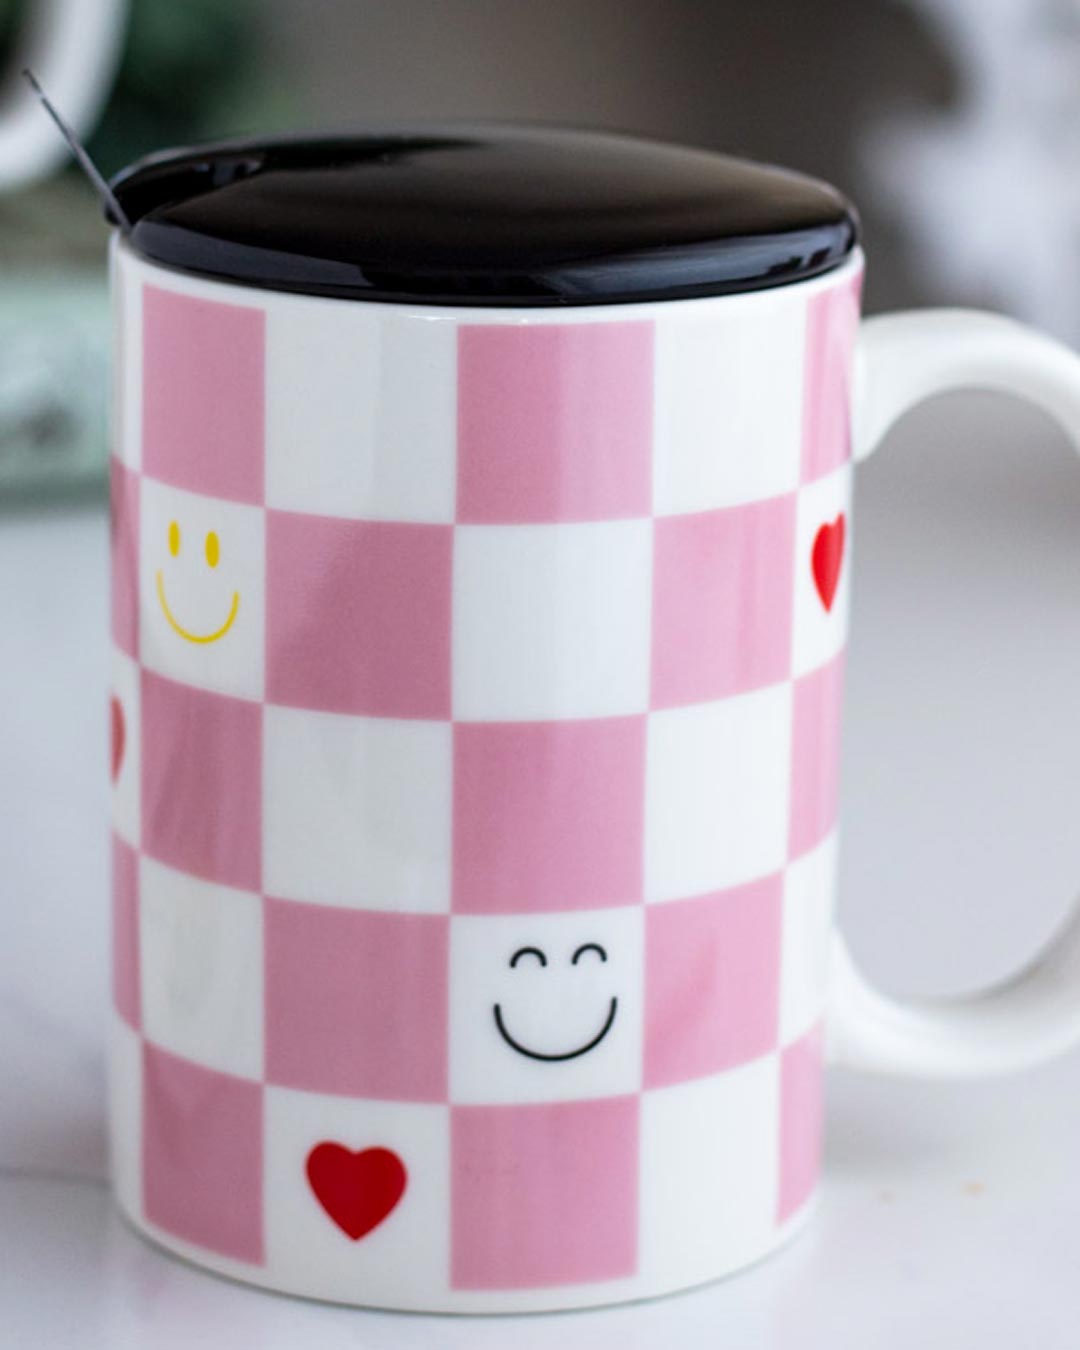 'Checkered' Coffee Mug - Pink